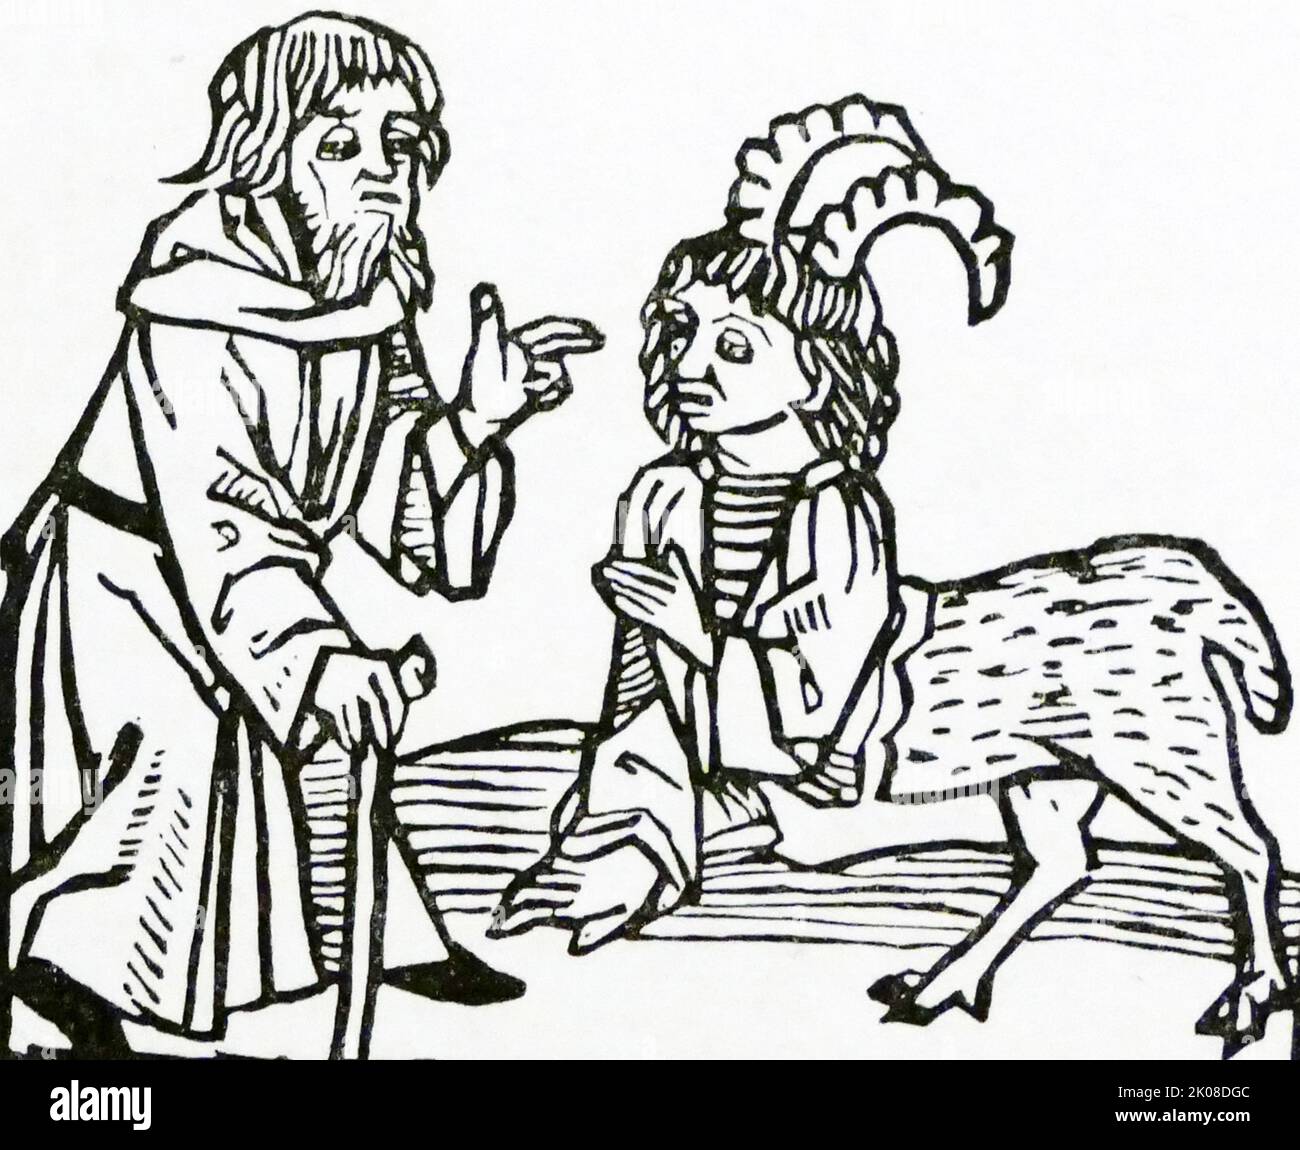 Der Heilige Einsiedler und das Monster. Montevilla, 15. Jahrhundert Illustration Stockfoto